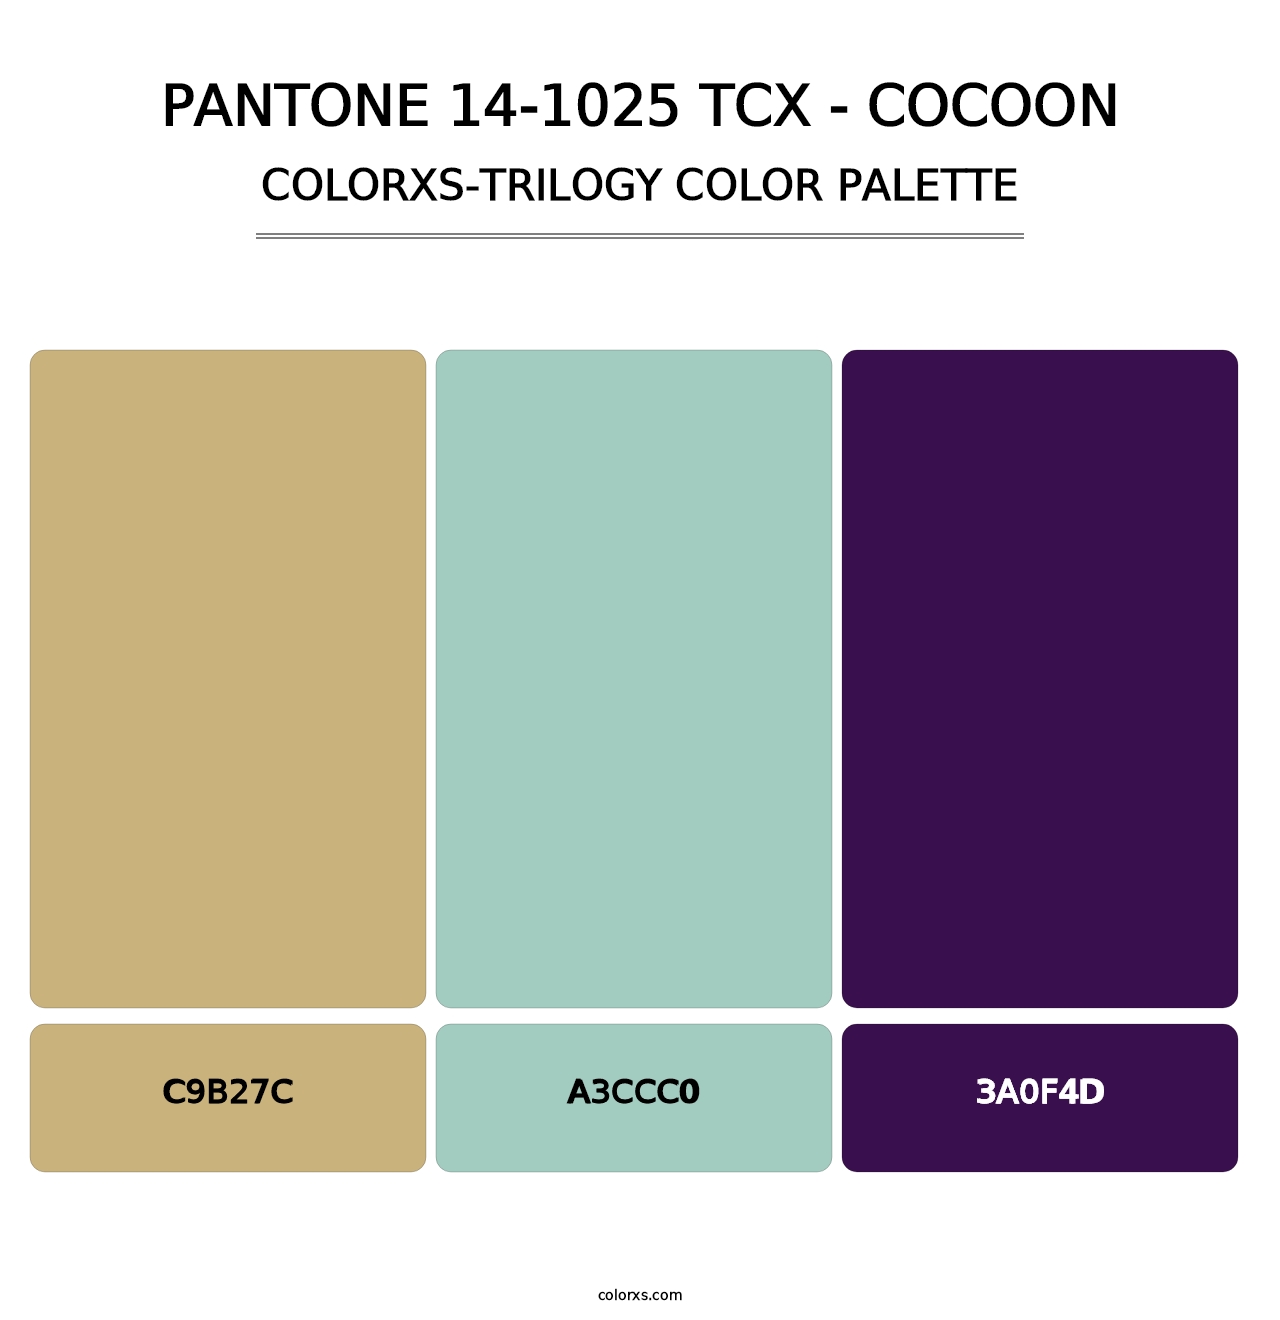 PANTONE 14-1025 TCX - Cocoon - Colorxs Trilogy Palette